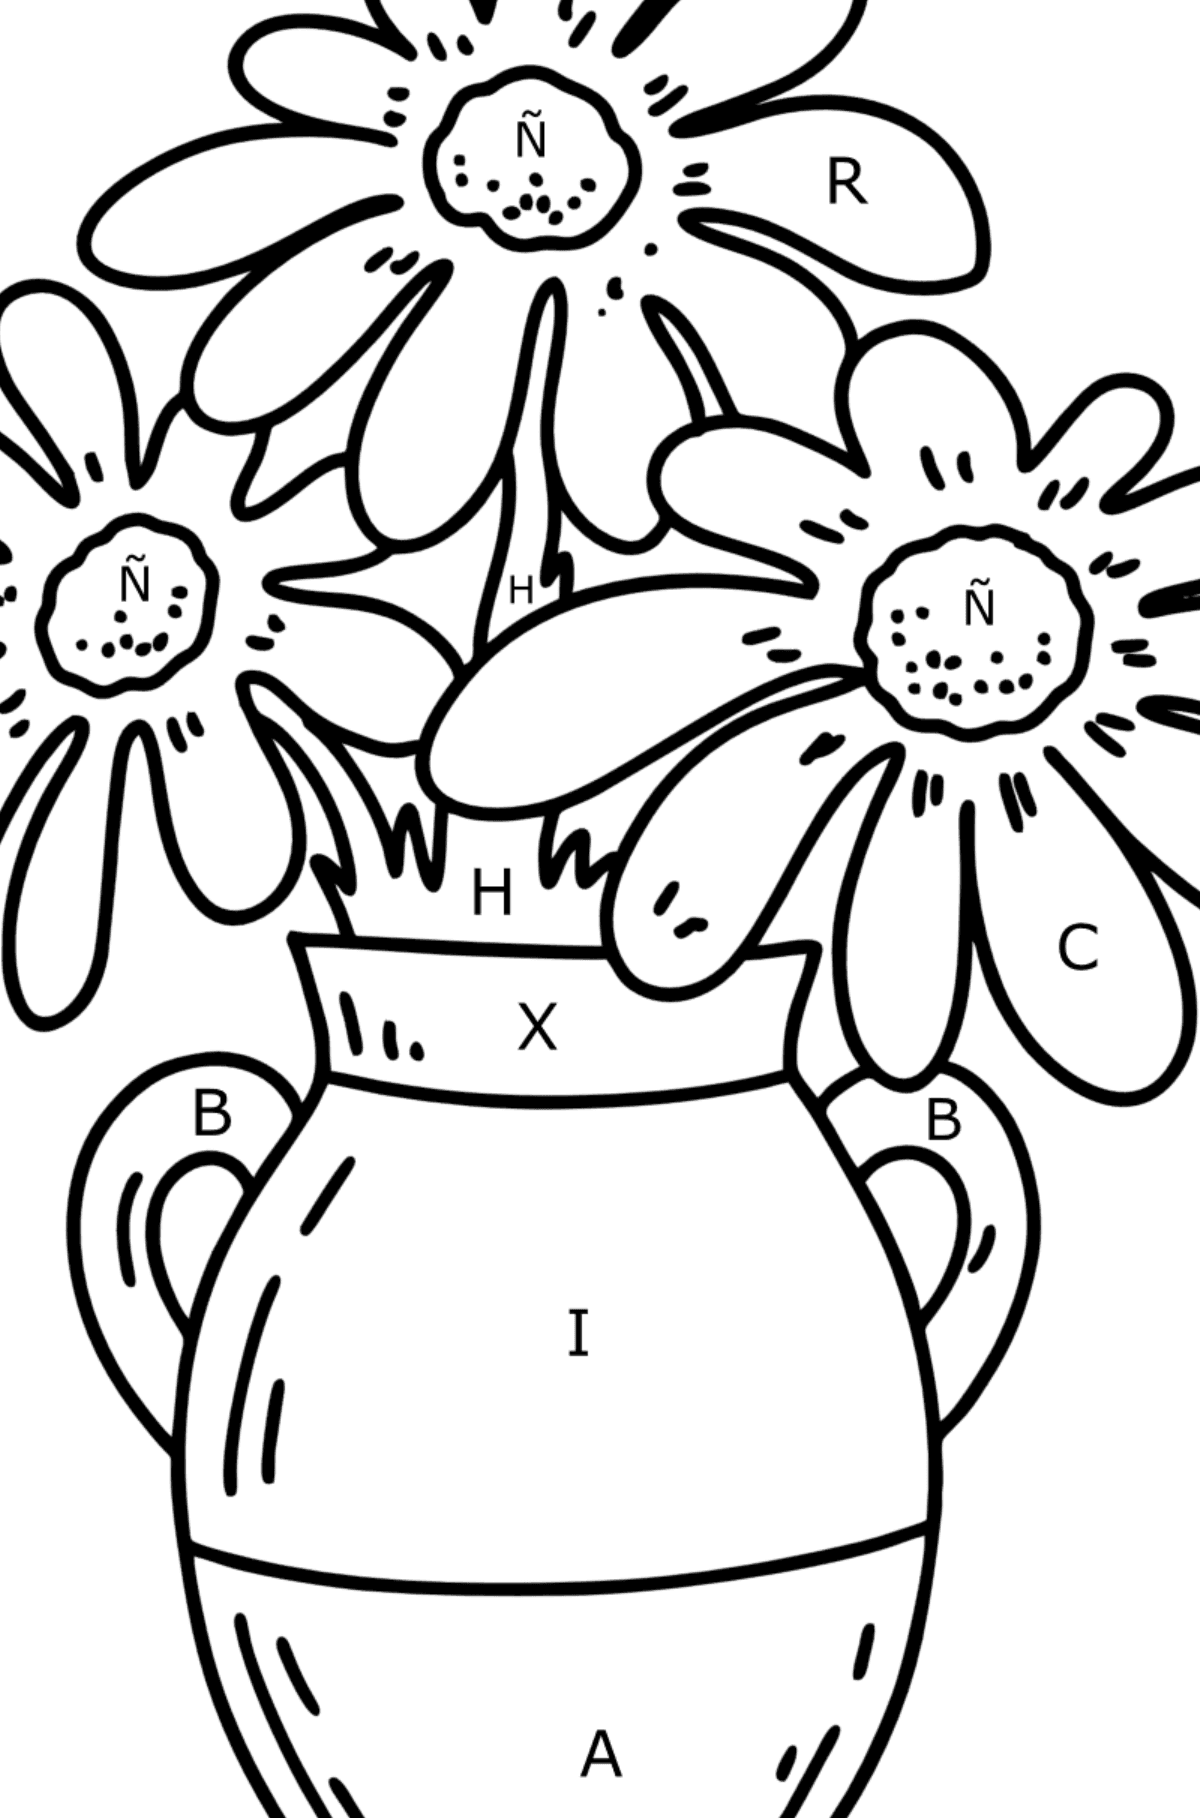 Dibujo para colorear de verano - Flores en un jarrón - Colorear por Letras para Niños